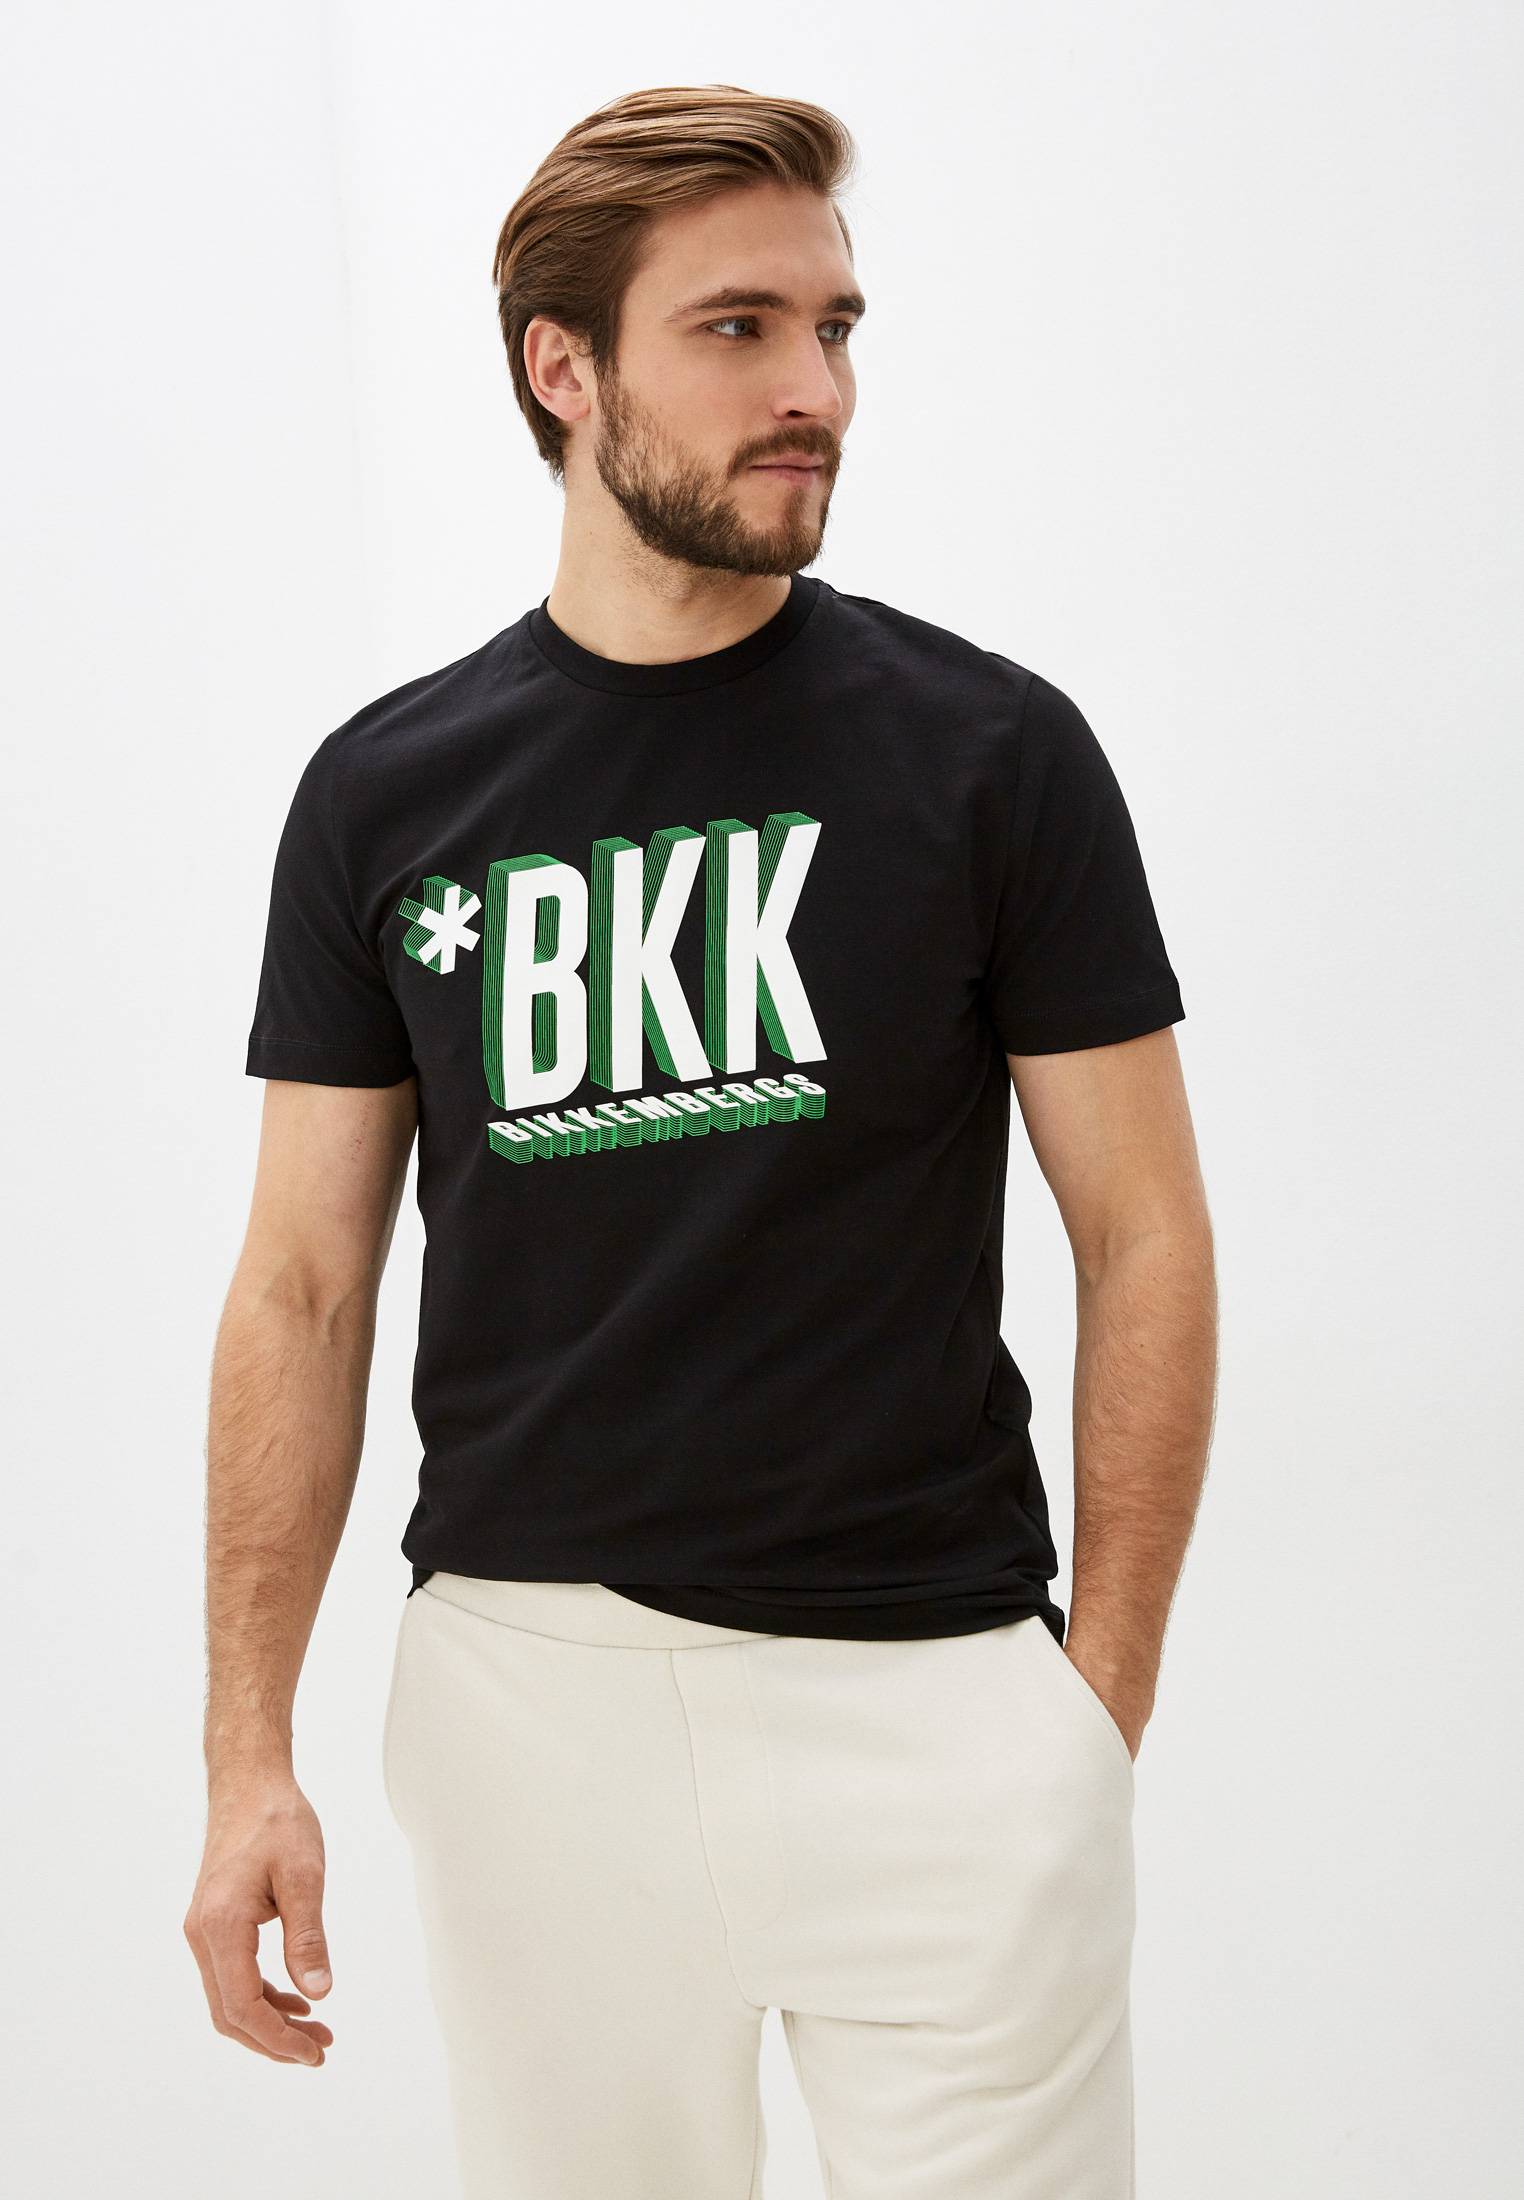 Мужская футболка Bikkembergs (Биккембергс) C 4 101 48 E 2296: изображение 1